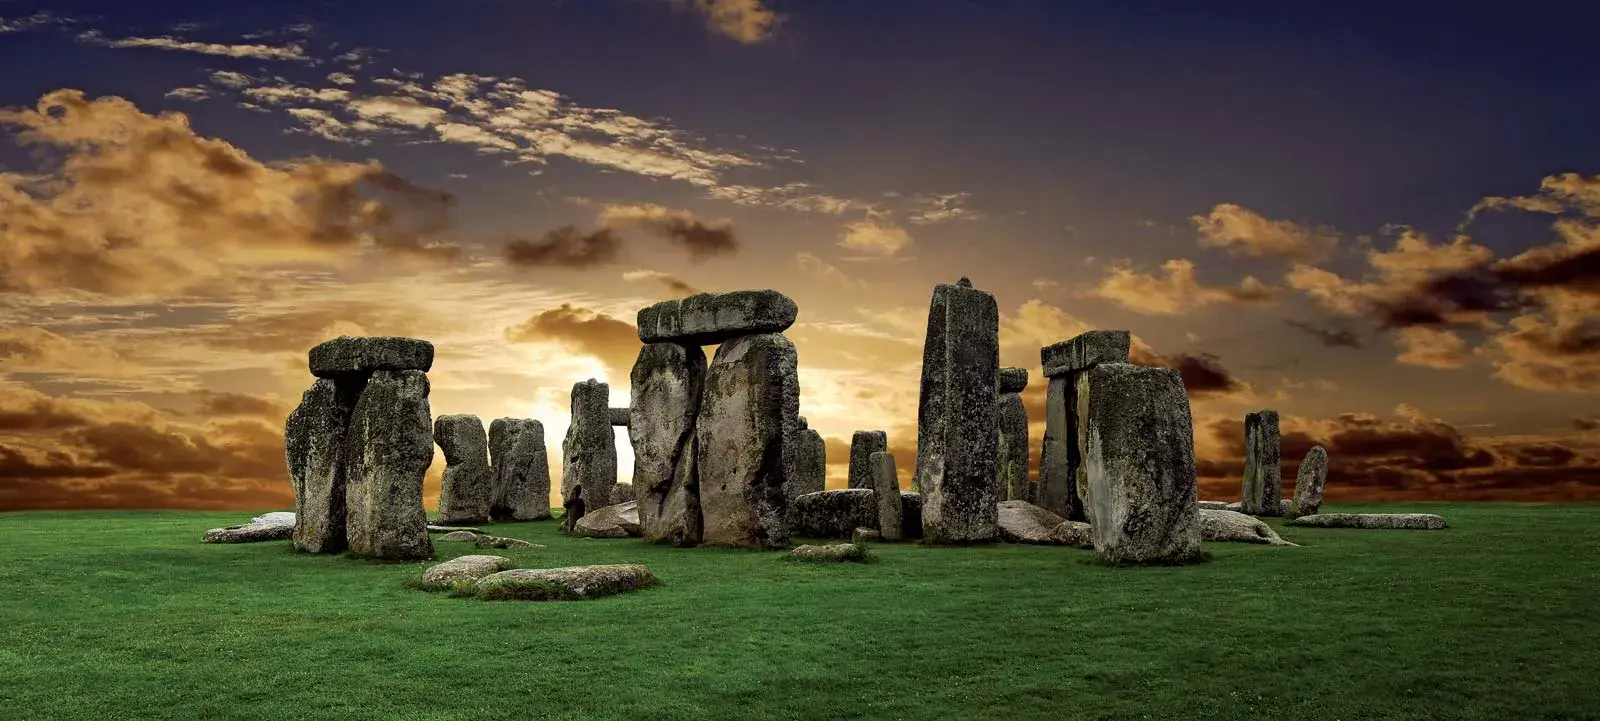 Stonehenge, United Kingdom - Mystical Megaliths